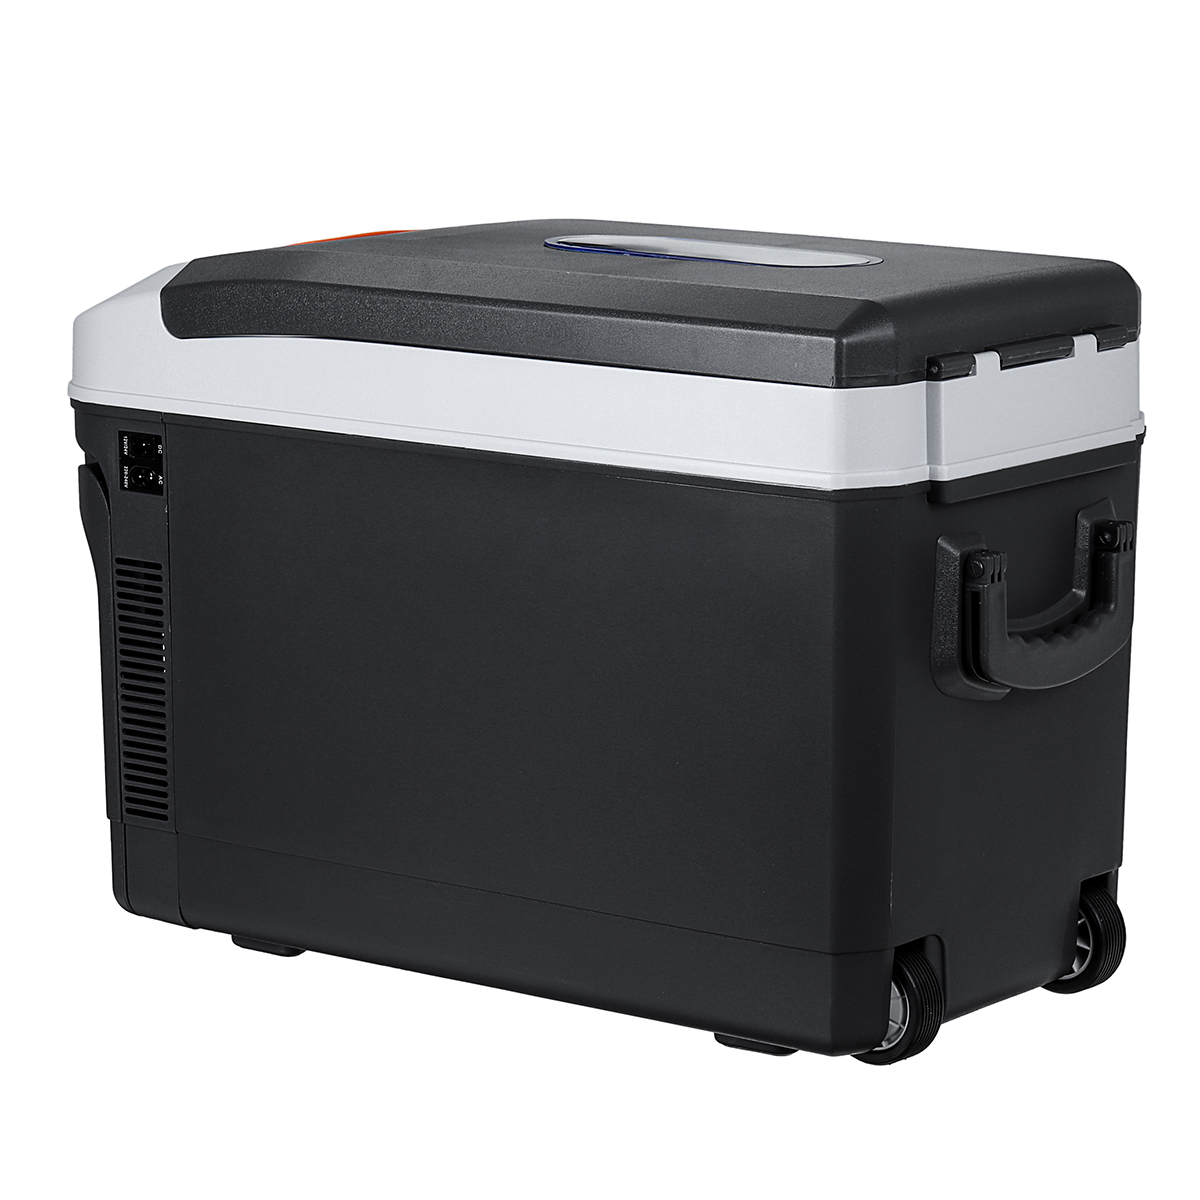 35L Portable Freezer Fridge Car Boat Caravan Home Cooler Refrigerator AU Plug - Auto GoShop